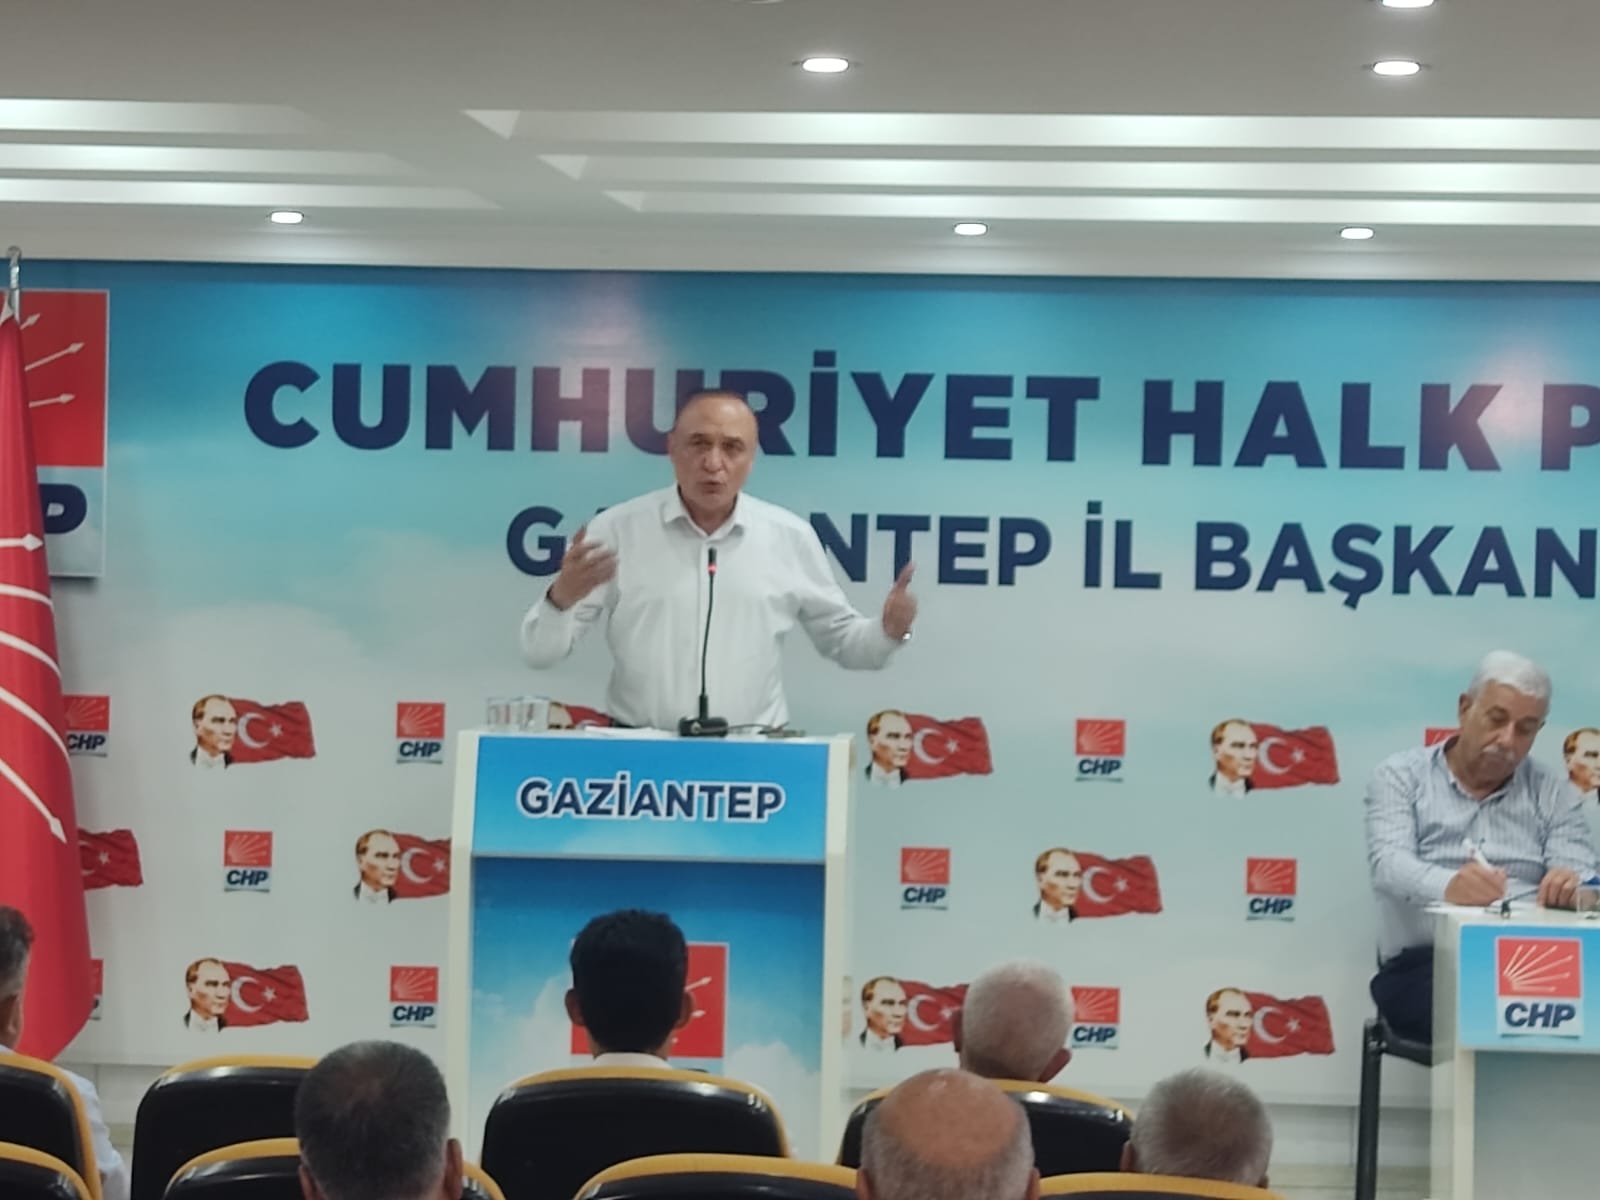 Melih MERİÇ | 28. Dönem CHP Gaziantep Milletvekili - HALKIN GERÇEK GÜNDEMİ GEÇİM DERDİ